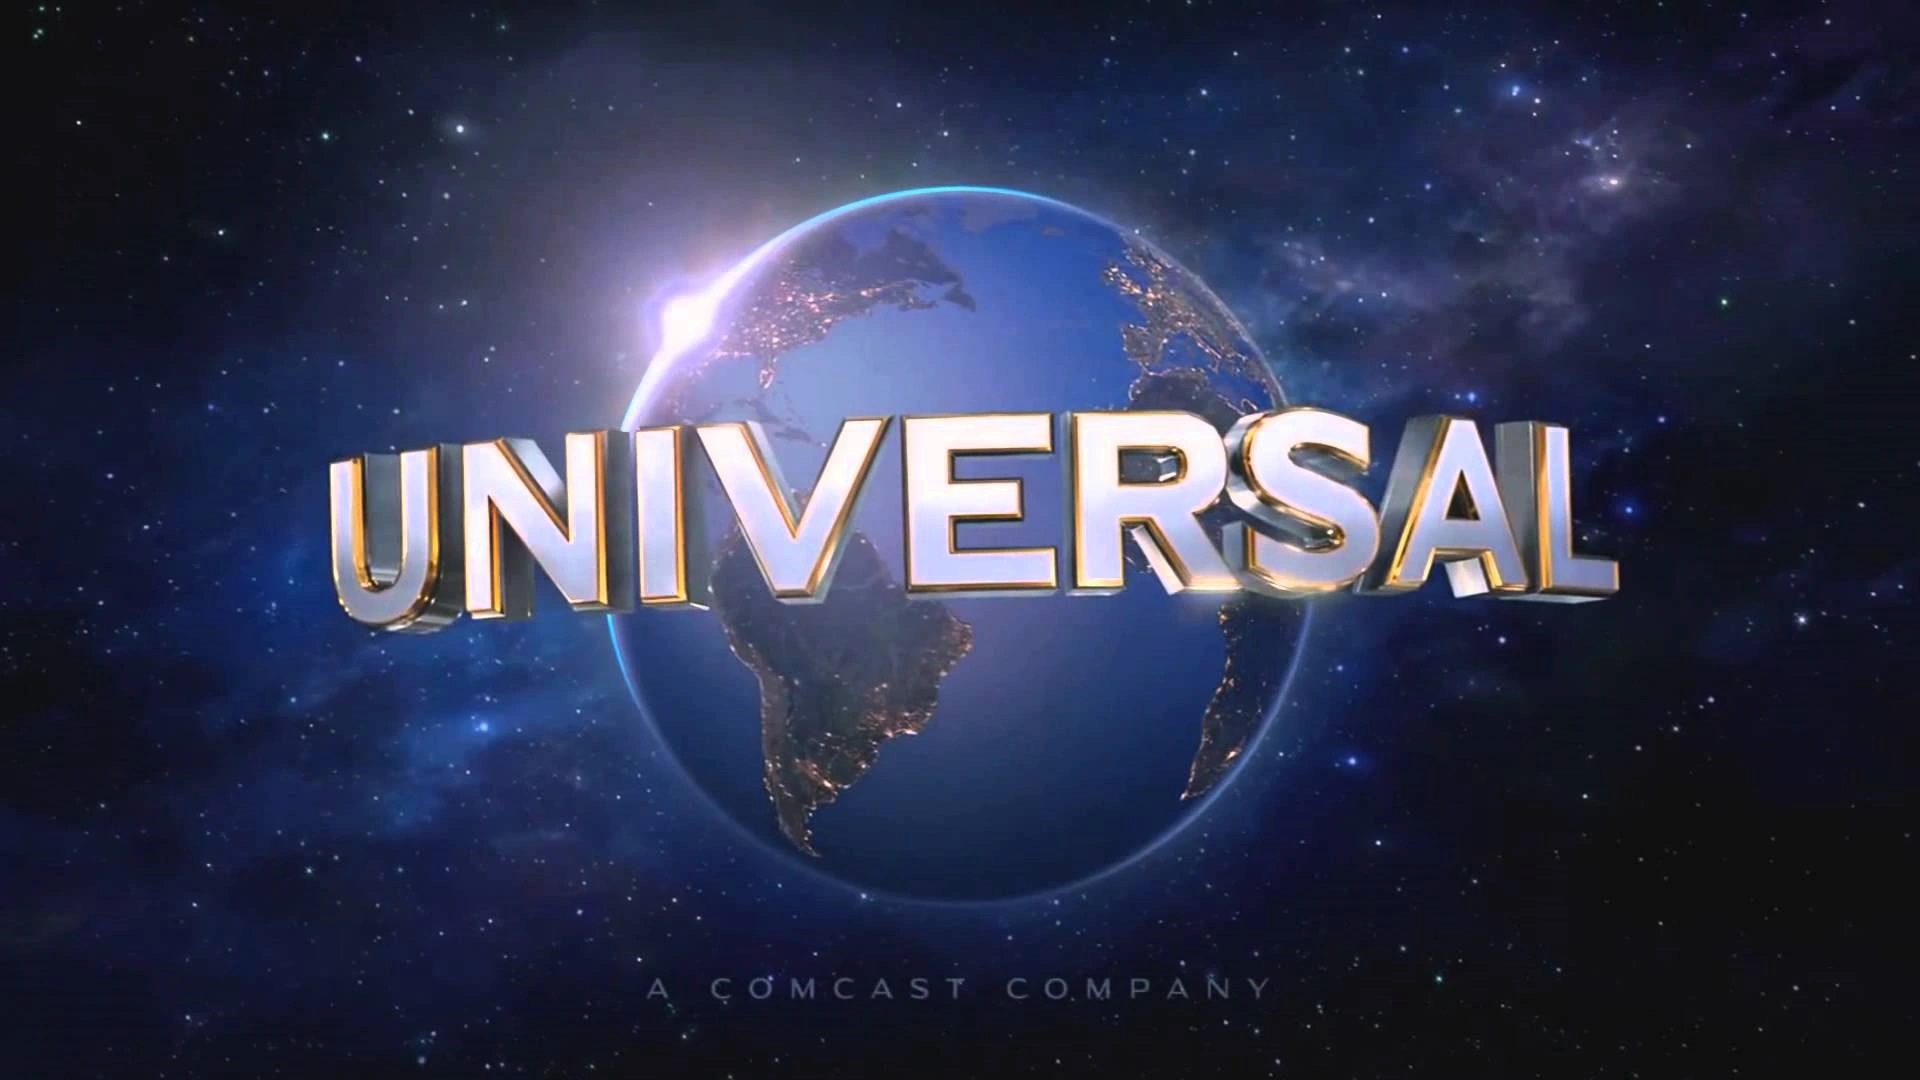 The End: Universal Pictures lascia finalmente il mercato russo e chiude i suoi uffici